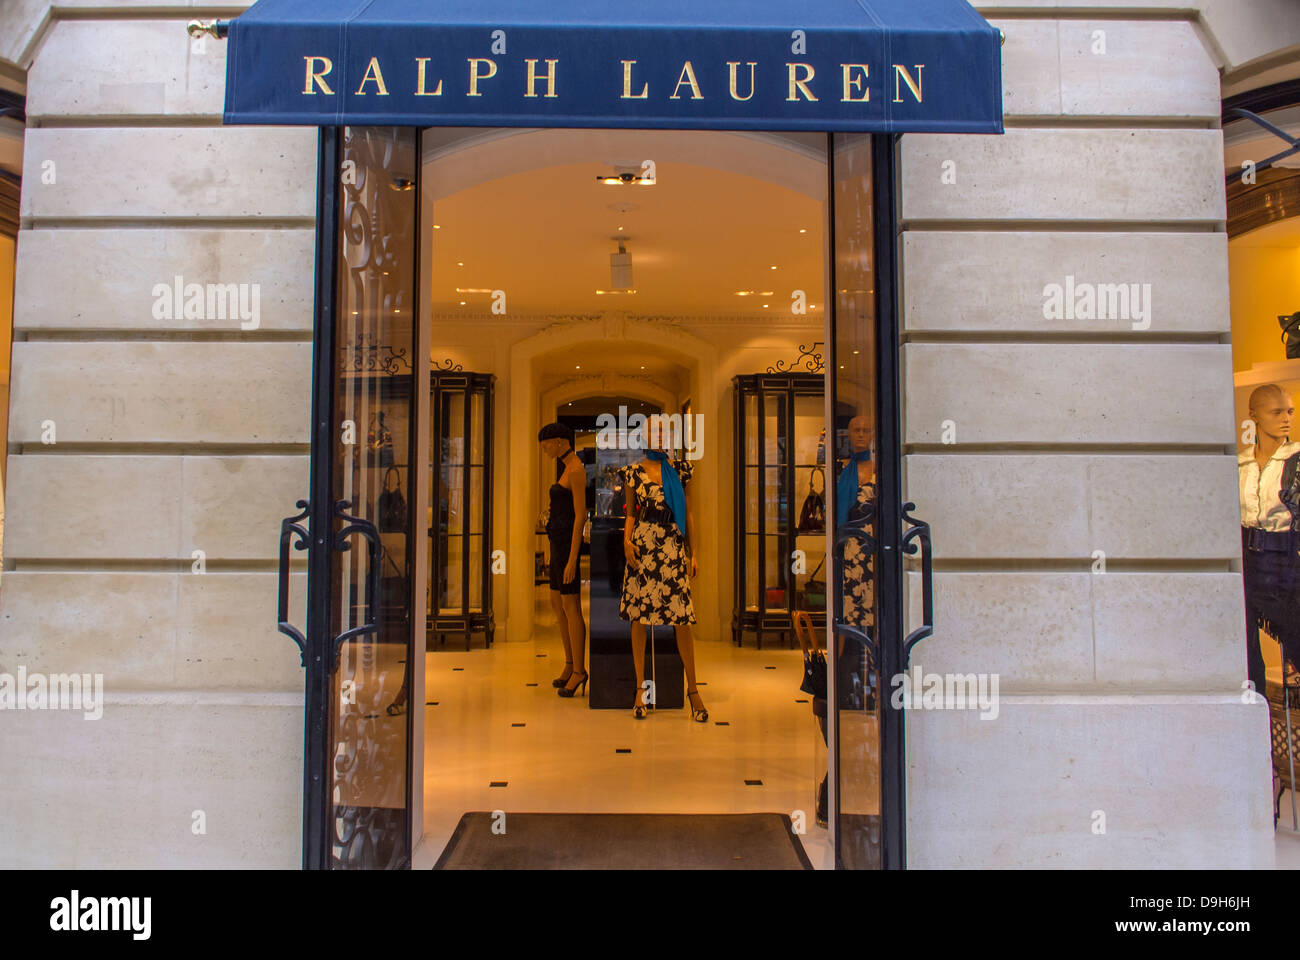 Paris, France, Luxury Store Fronts, Entrance to "Ralph Lauren" Shop Stock  Photo - Alamy